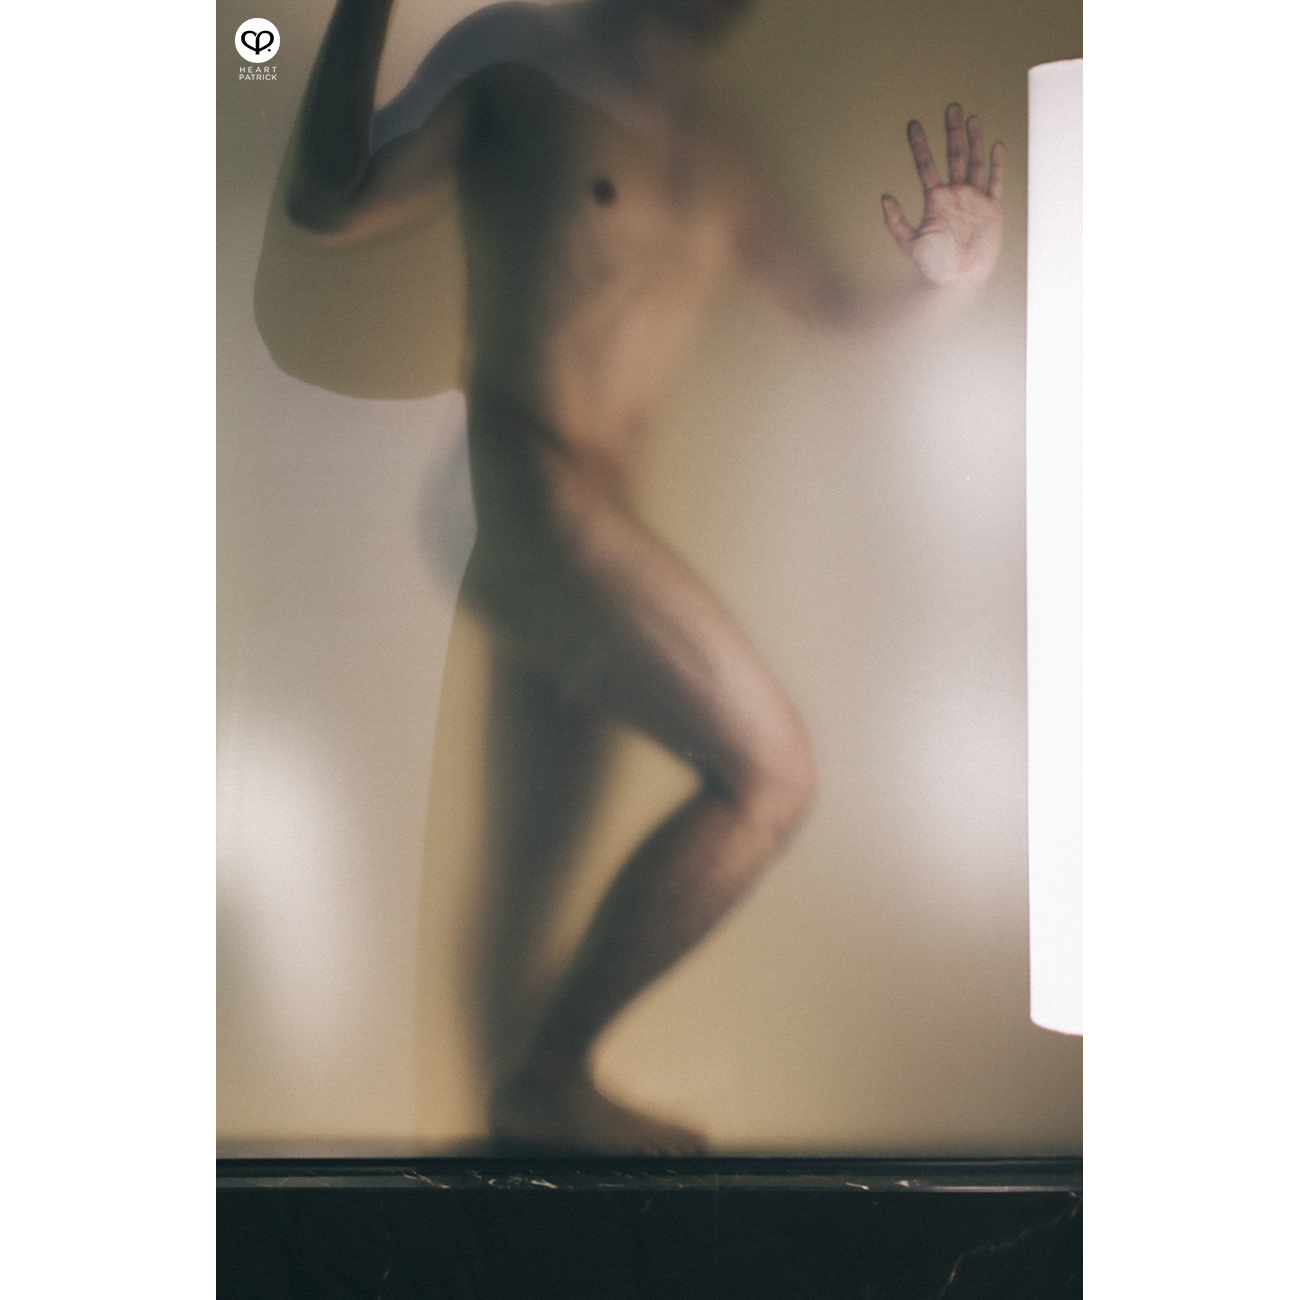 somethingaboutpatrick asianboy asianguy sensual portrait artistic nude